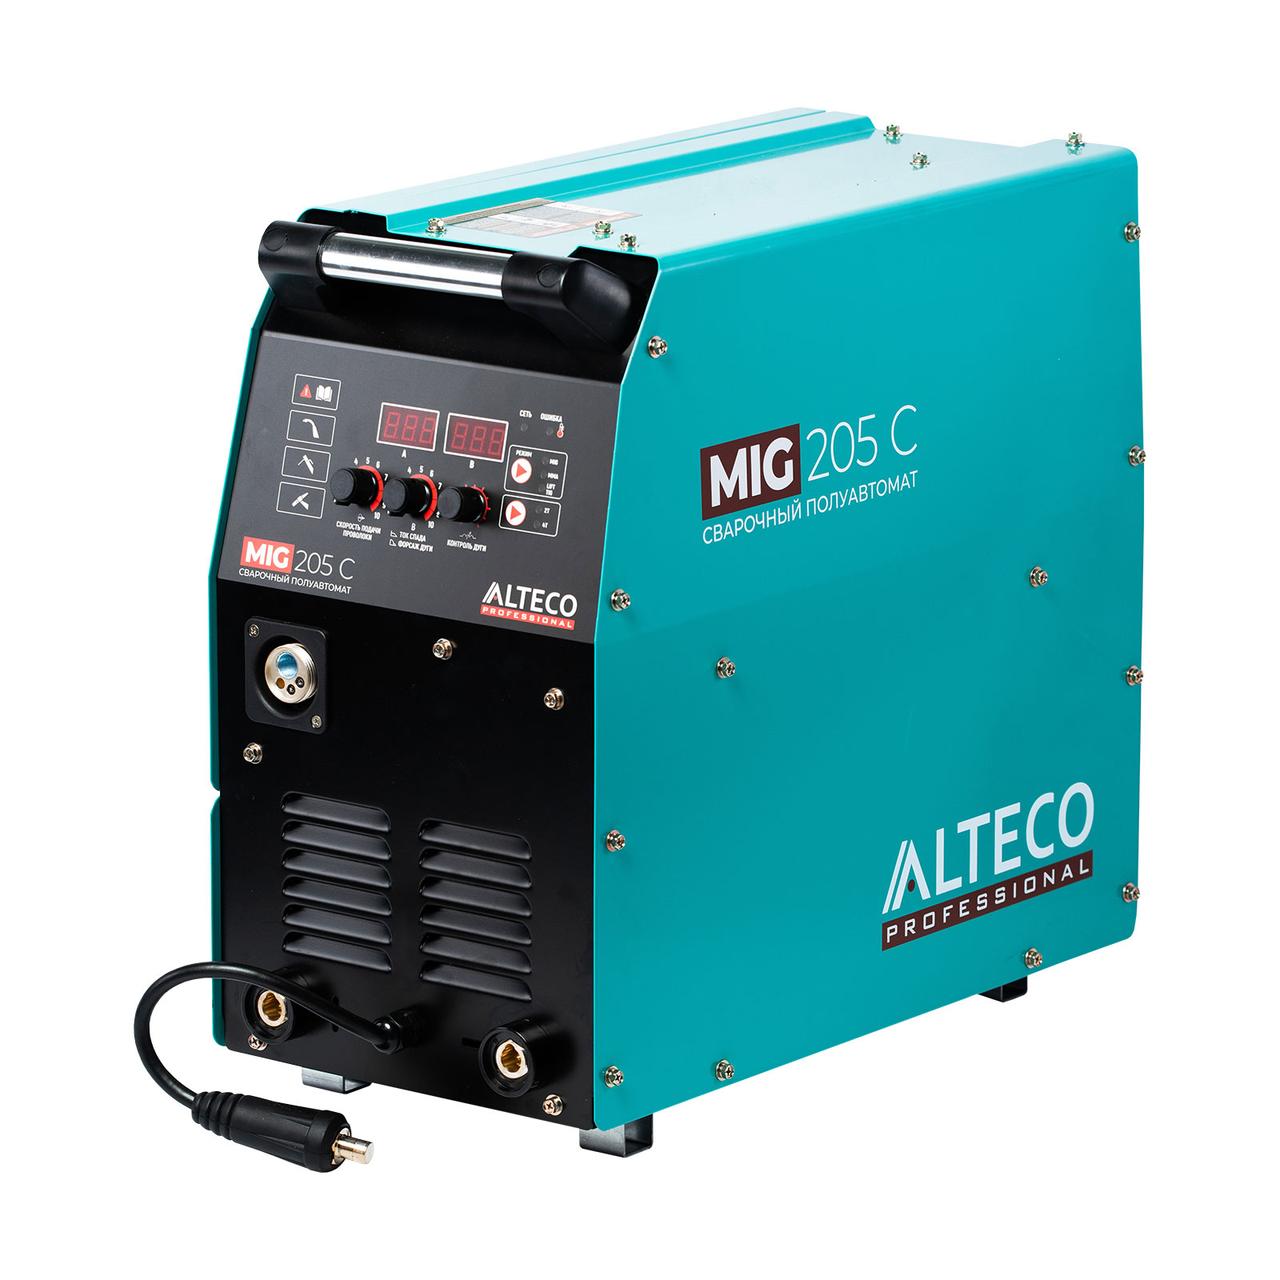 Сварочный аппарат ALTECO MIG 205 C, фото 1